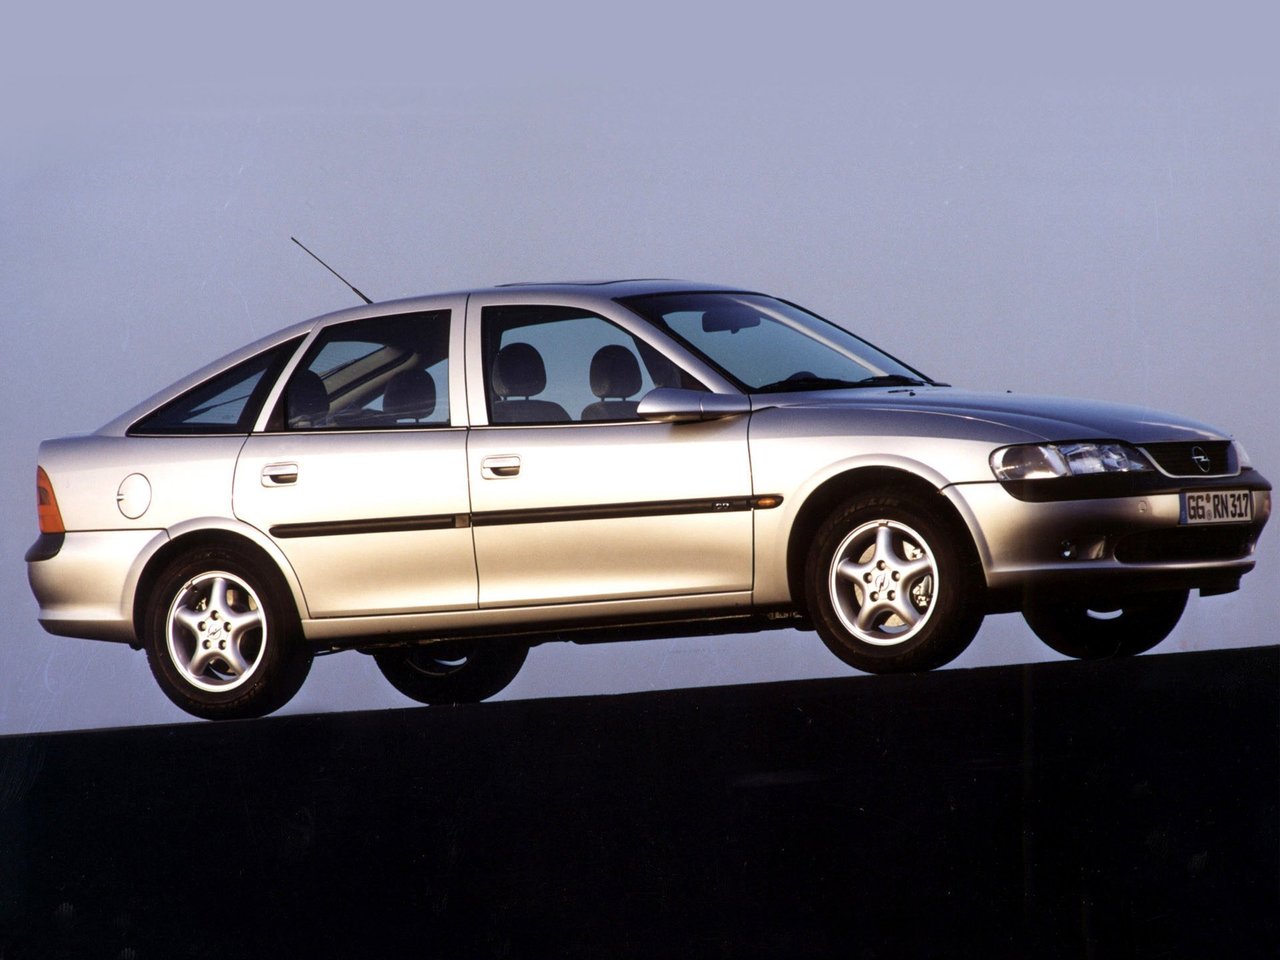 Расход газа восьми комплектаций хэтчбека пять дверей Opel Vectra. Разница стоимости заправки газом и бензином. Автономный пробег до и после установки ГБО.